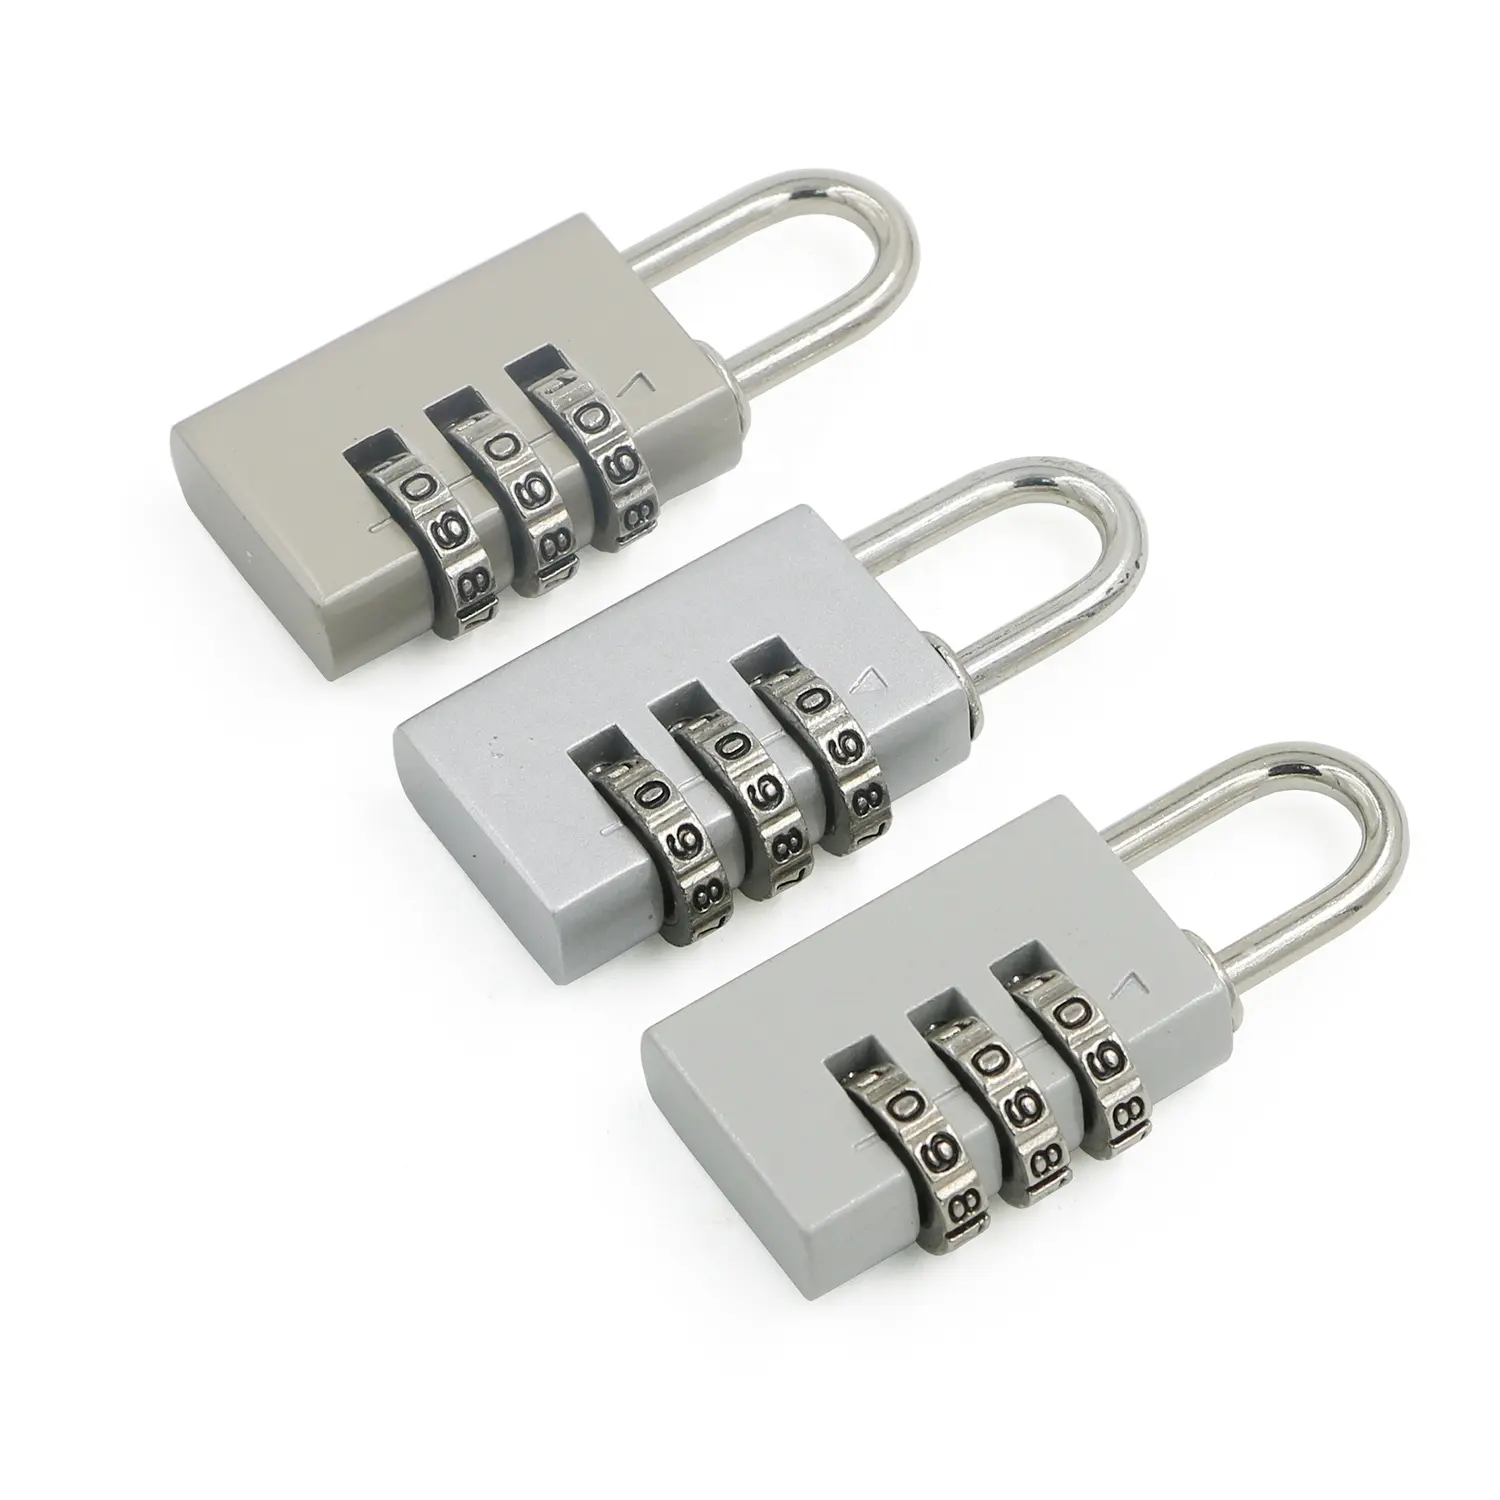 9906A Mini Compact Sicherheits gepäcks chloss Zink legierung 3-stelliger Kombination scode Rucksack Vorhänge schloss